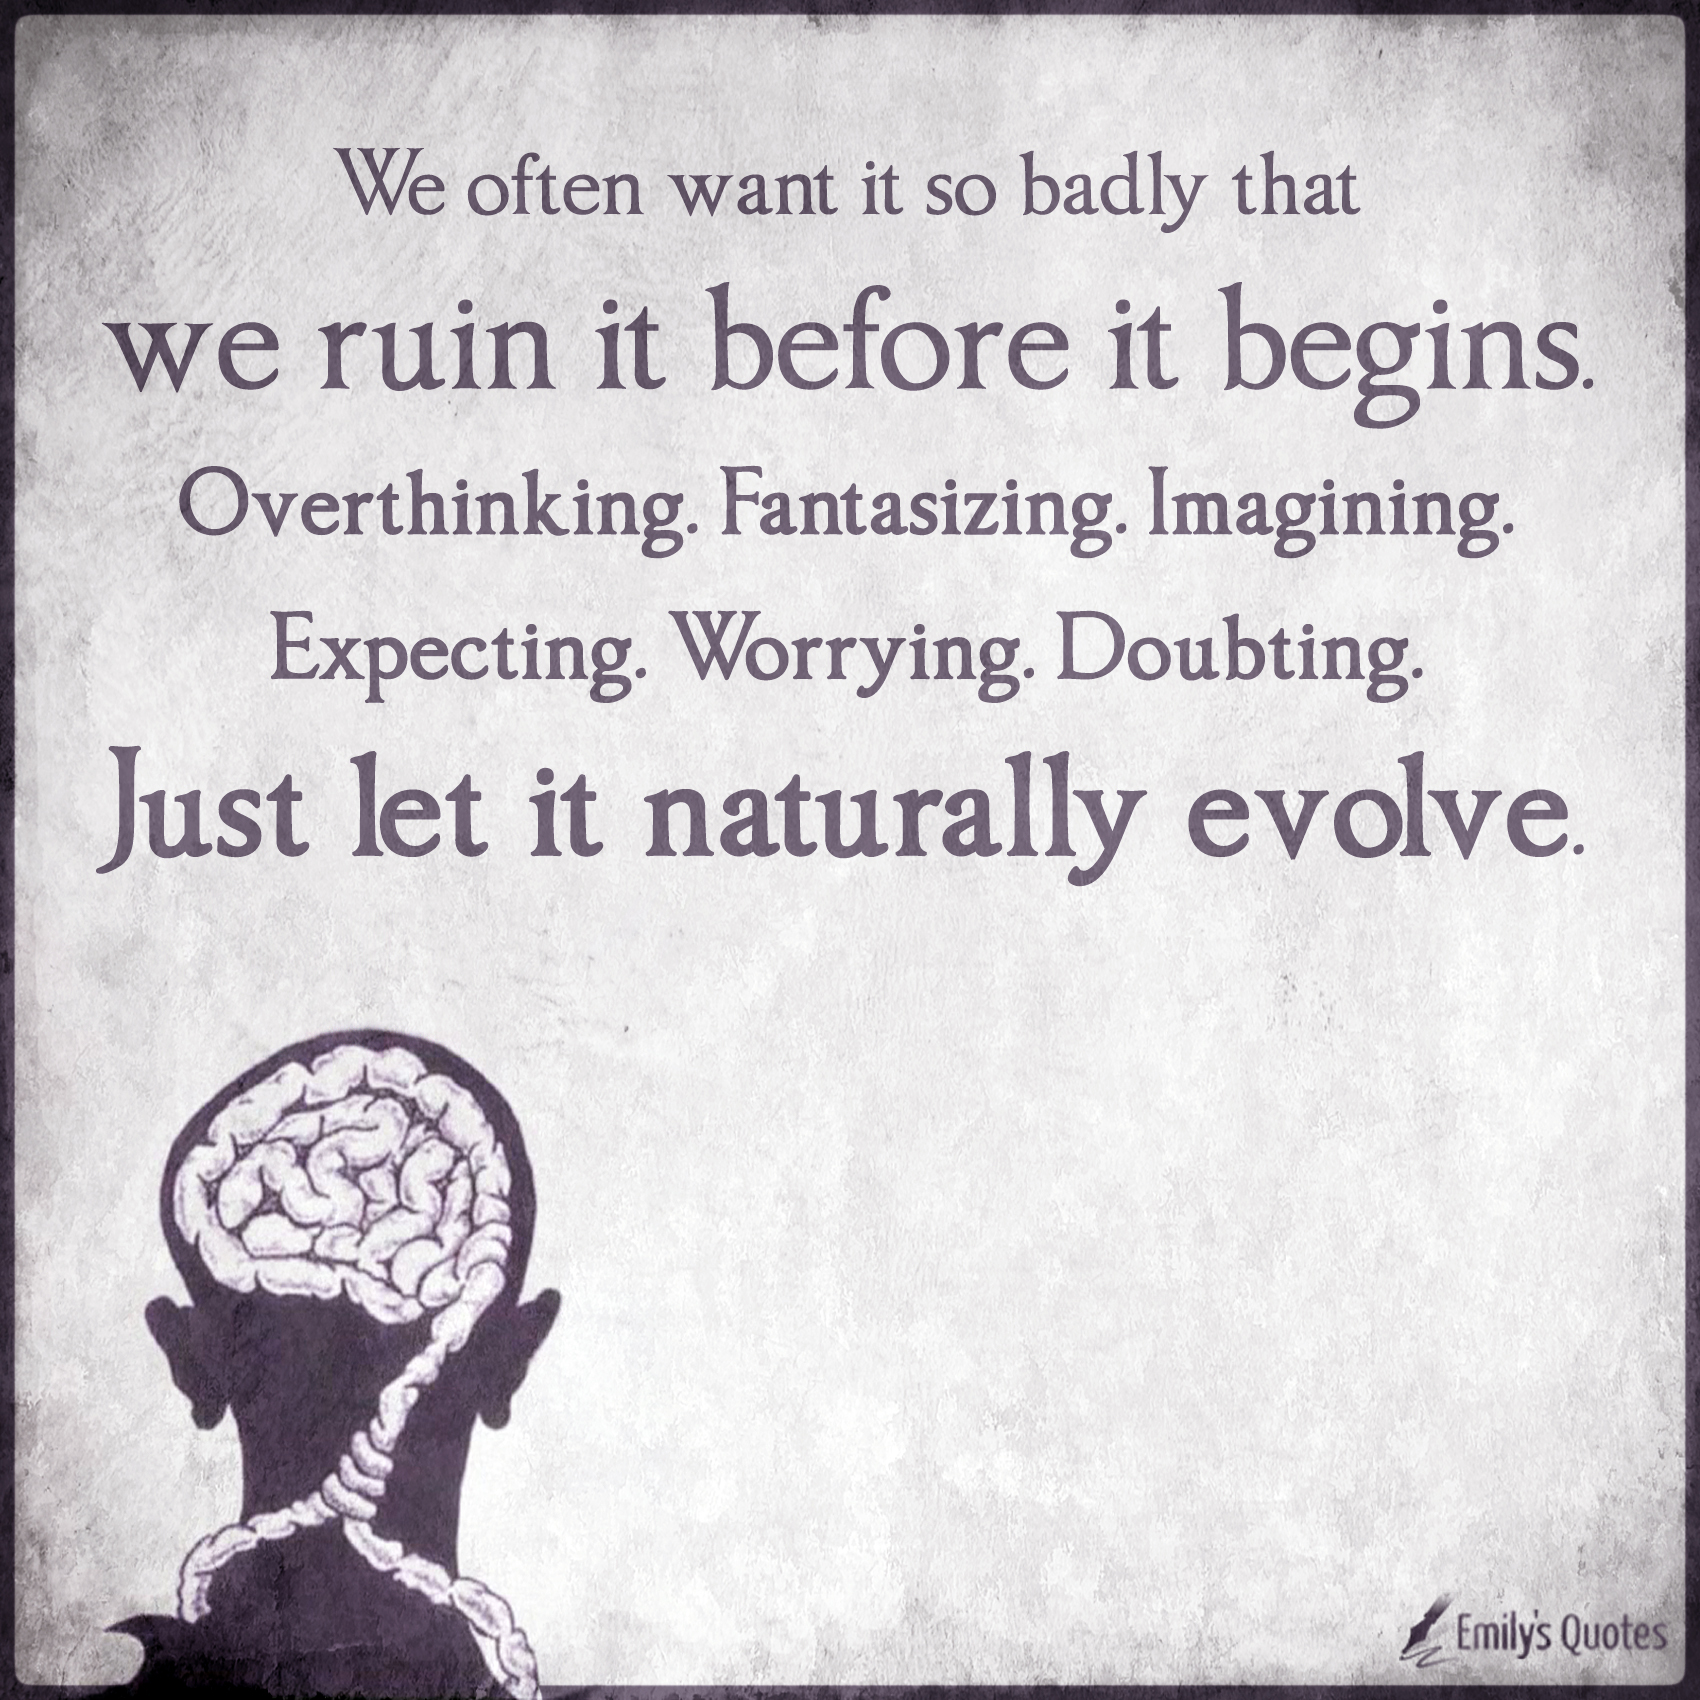 We often want it so badly that we ruin it before it begins. Overthinking. Fantasizing. Imagining